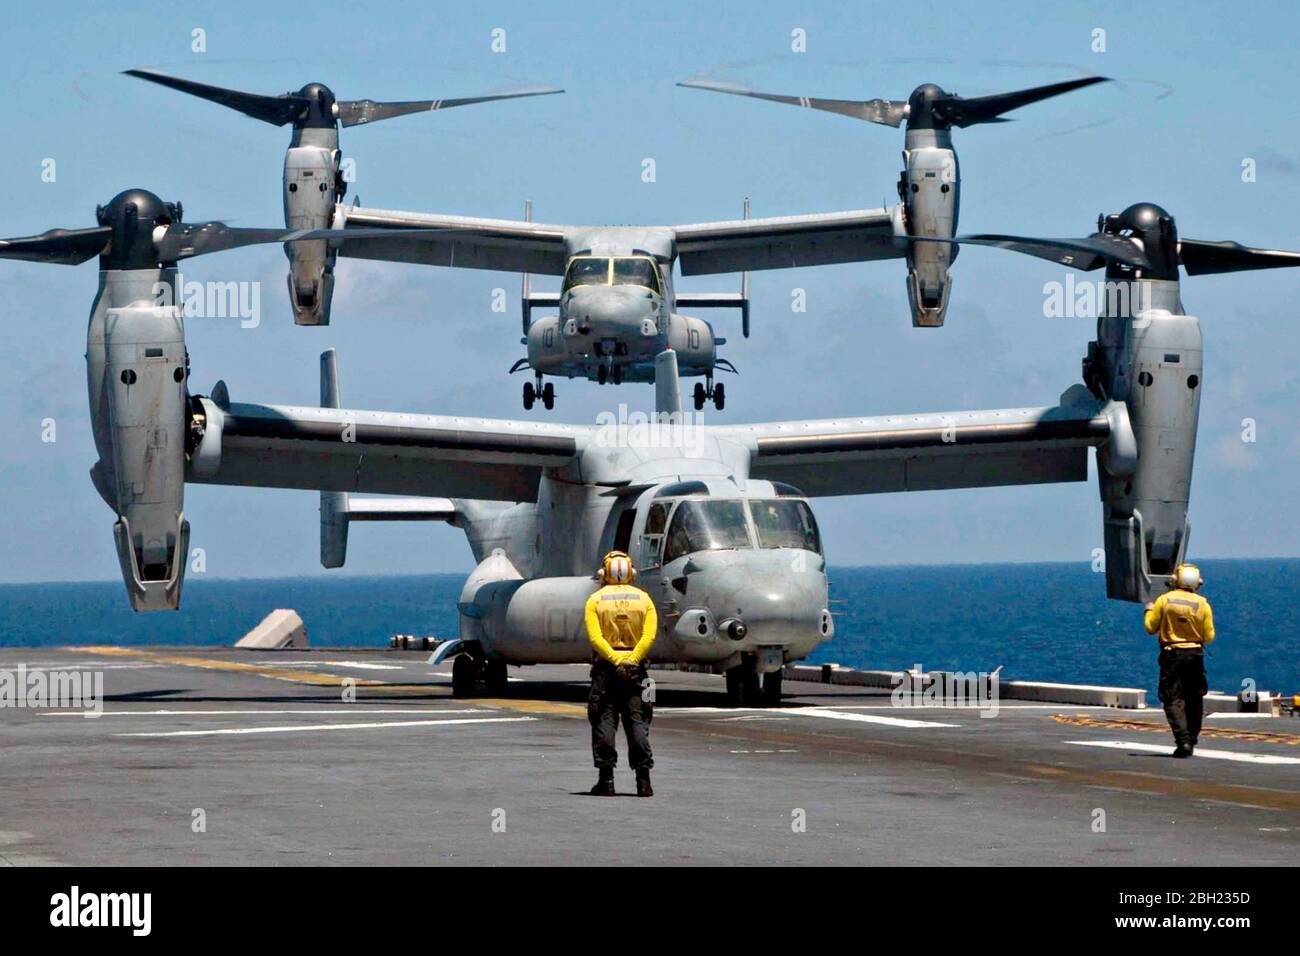 La Marina de los Estados Unidos MV-22B Osprey tiltrotor Avión con el Escuadrón de Tiltrotor Medio Marino 265 aterriza en la cubierta de vuelo del buque insignia de asalto anfibio clase América USS América durante las operaciones de vuelo el 20 de abril de 2020 en el Mar de China Meridional. Foto de stock